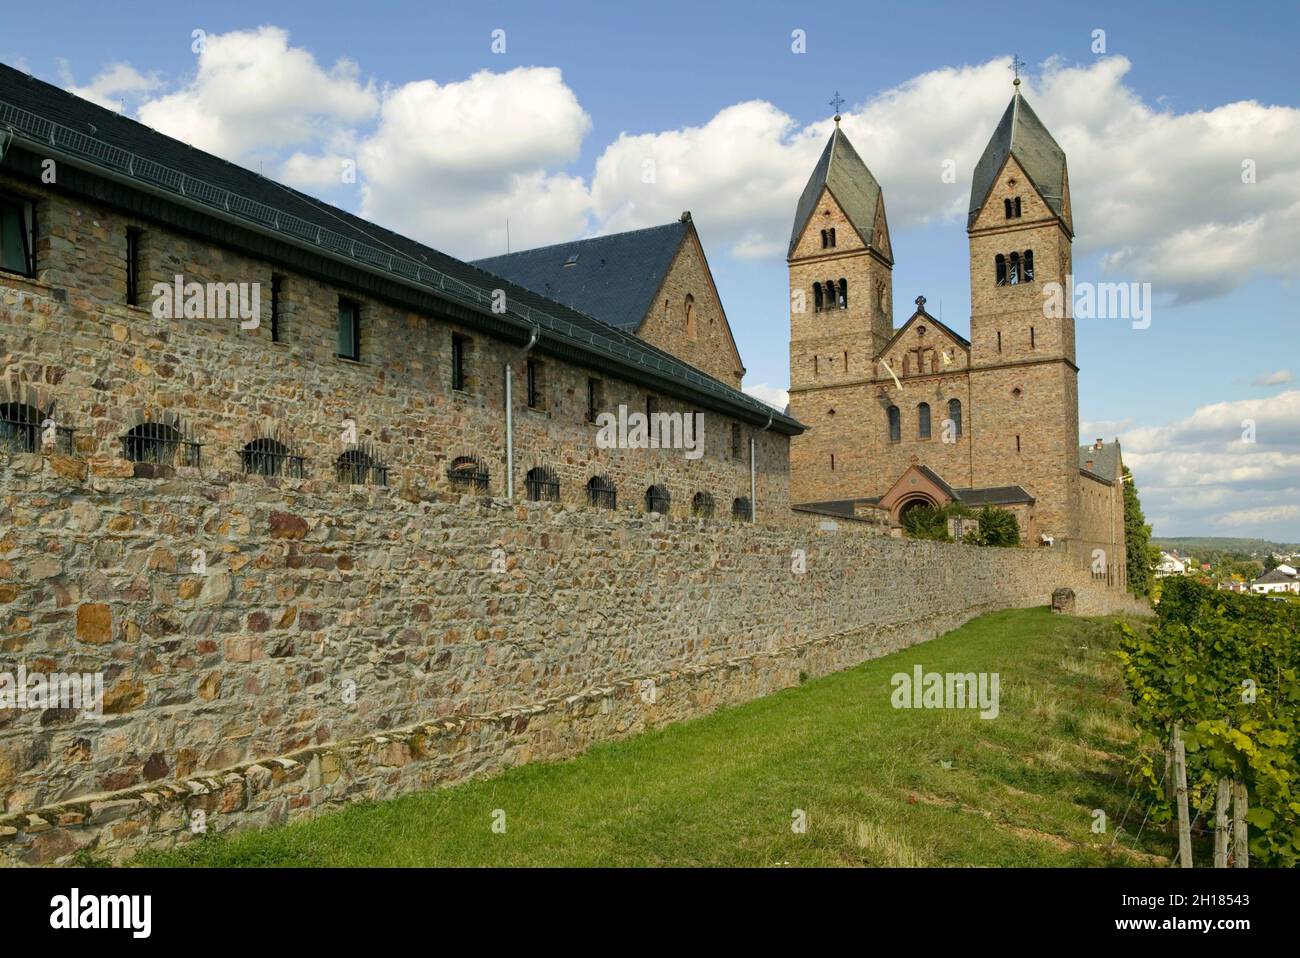 The monastery of St. Hildegard, Eibingen near Ruedesheim, founded by Hildegard von Bingen, Rheinland Pfalz, Germany, Europe Stock Photo